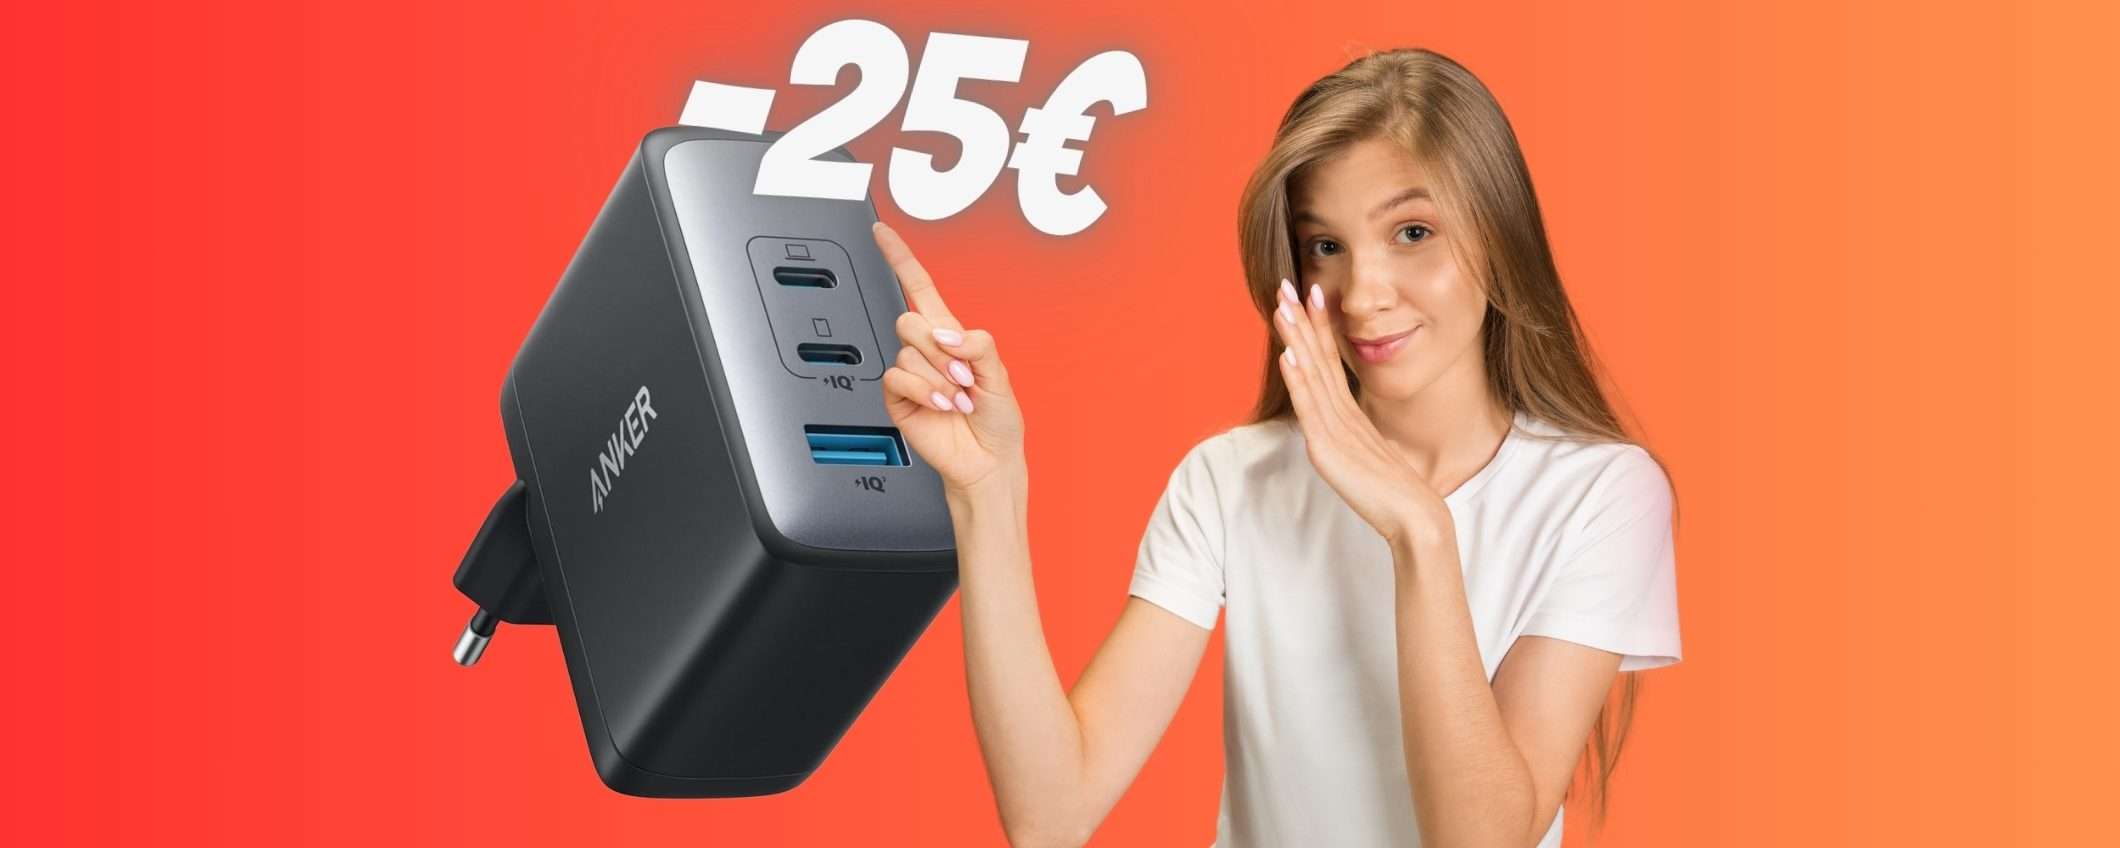 Caricatore USB da 100W con 3 porte per caricare di TUTTO (-25€)